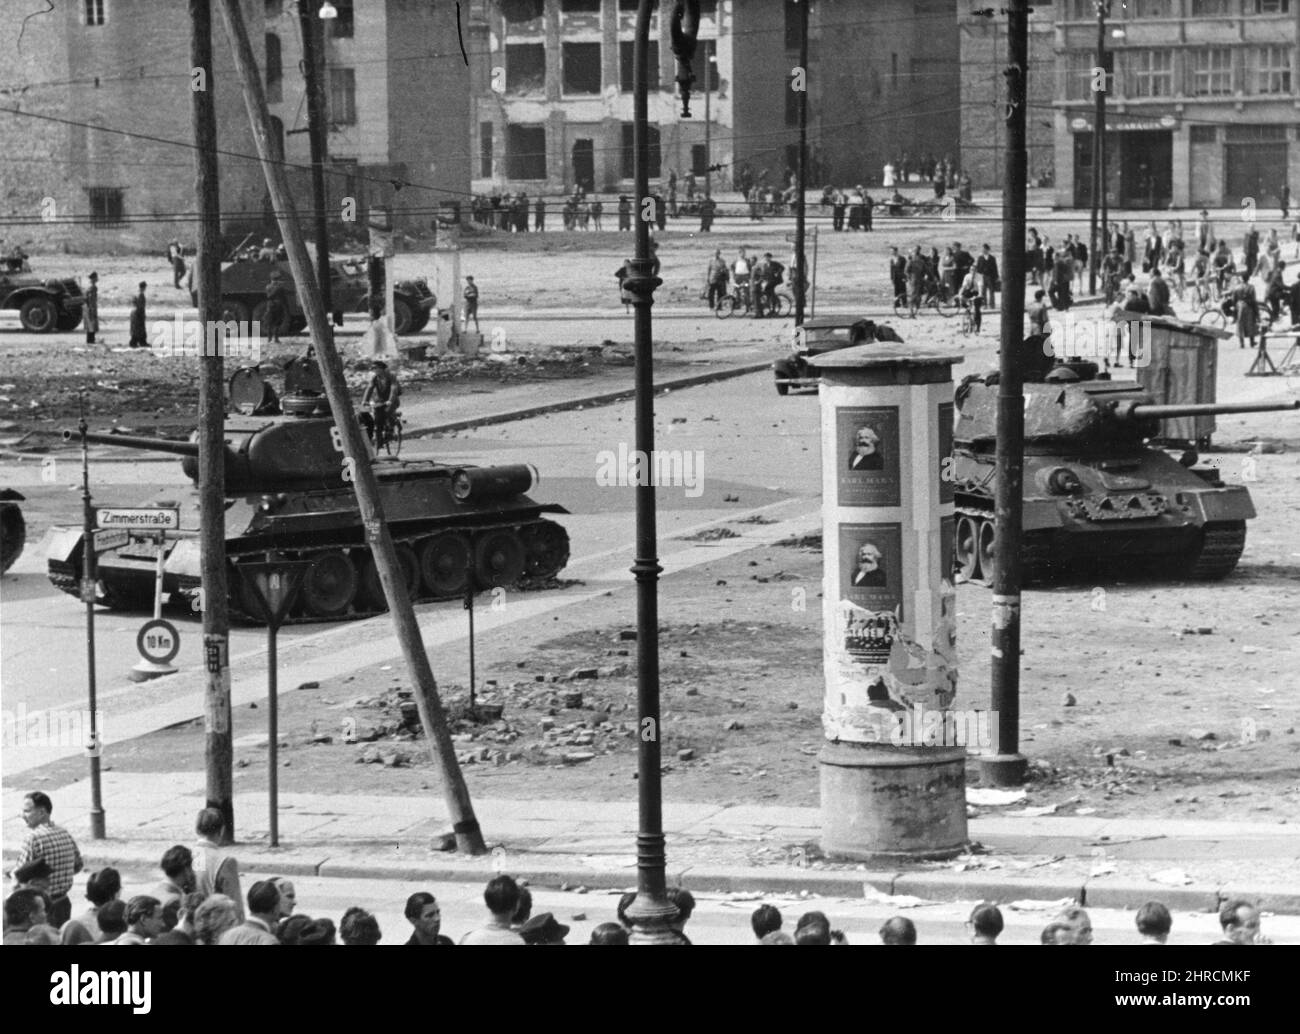 Panzerbesatzungen der Roten Armee bemannen T-34-Panzer an der Friedrichstraße in der Nähe des Potsdamer Platzes 6-17-53. Ostberliner versammeln sich im Hintergrund. Ost-Berlin, Juni 1953. Stockfoto